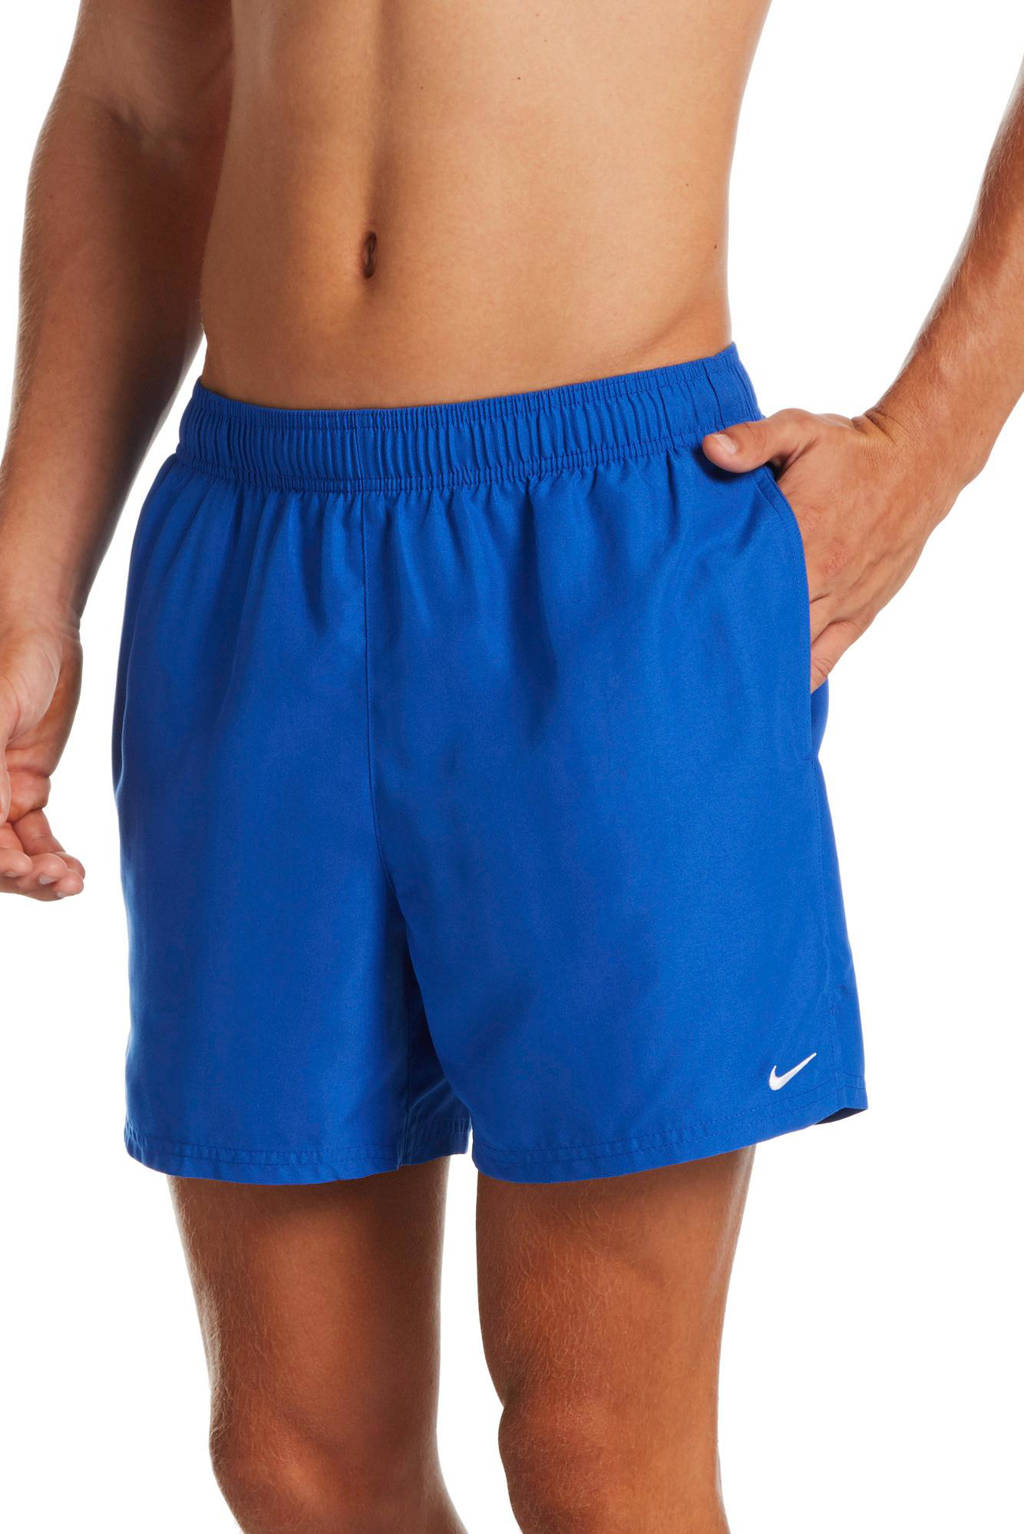 Nike zwemshort Essential kobaltblauw